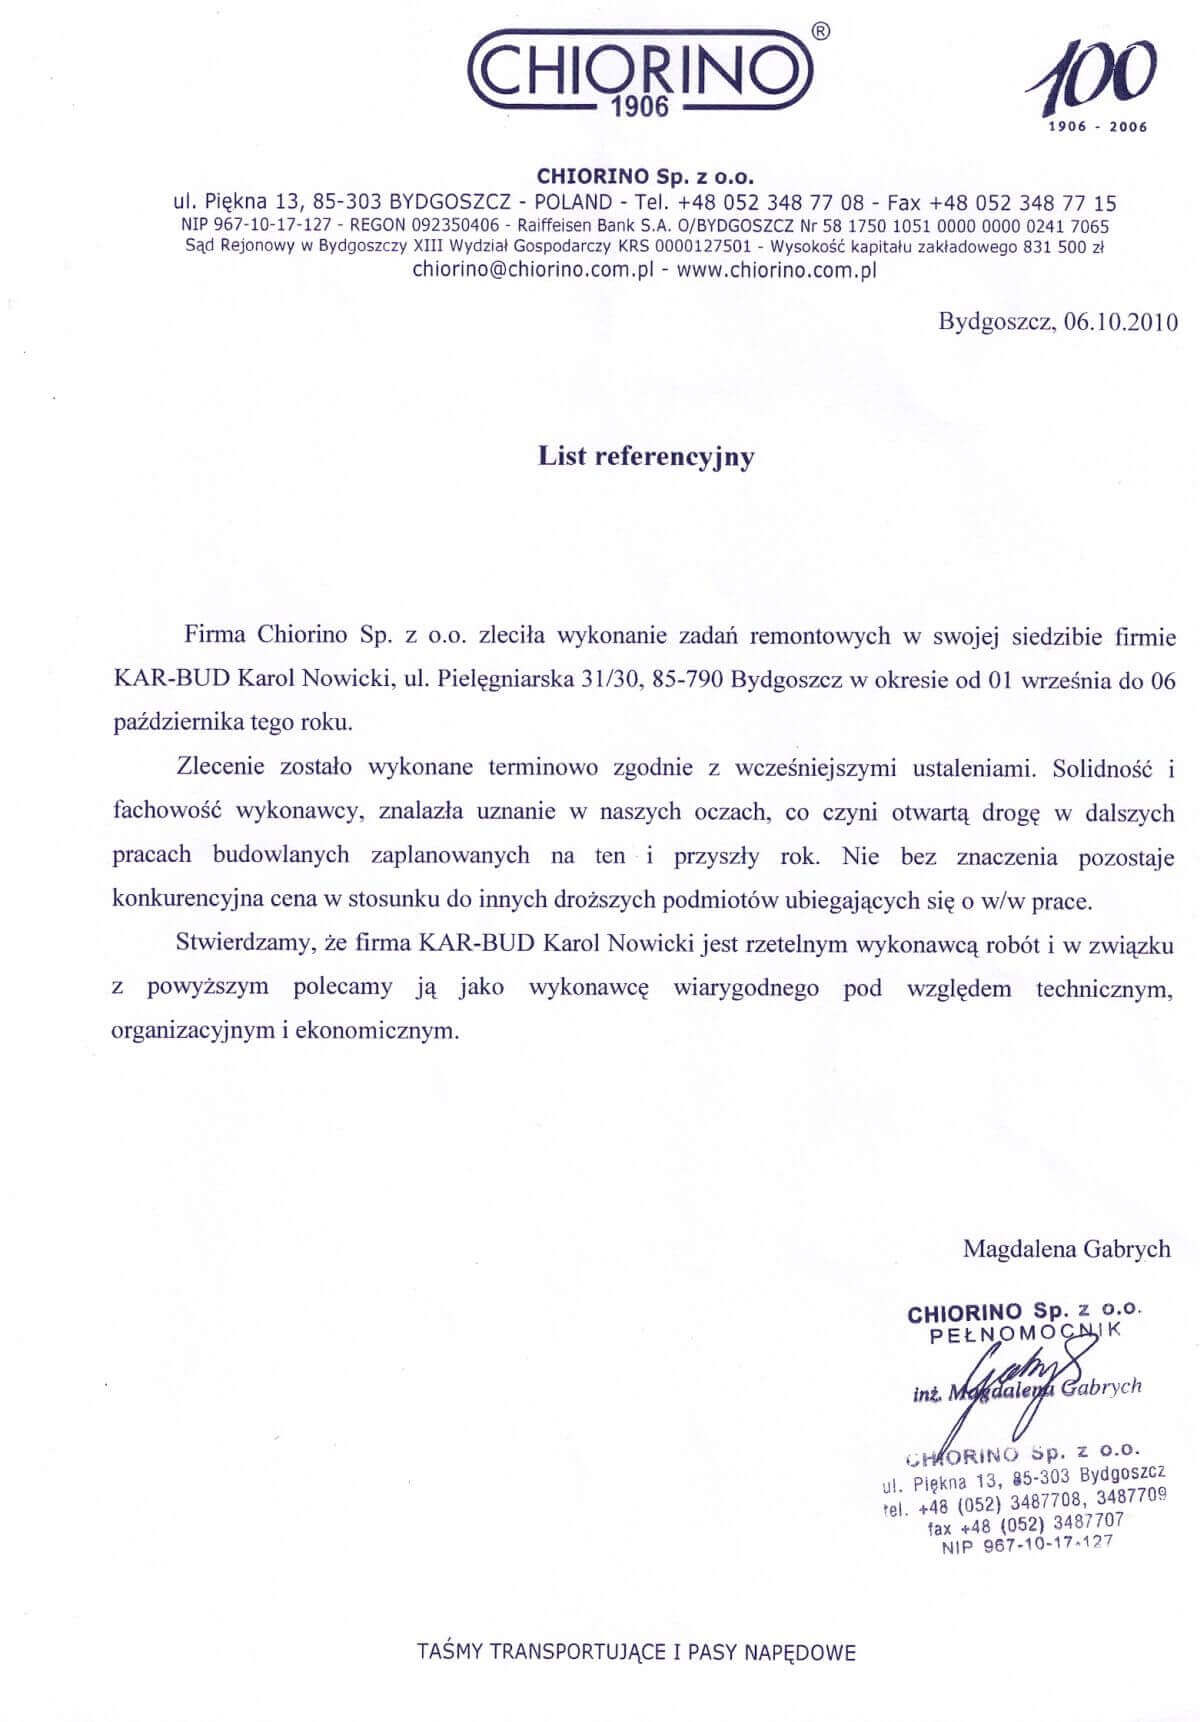 list refeencyjny bydgoskiej firmy Chiorino 2010 r.